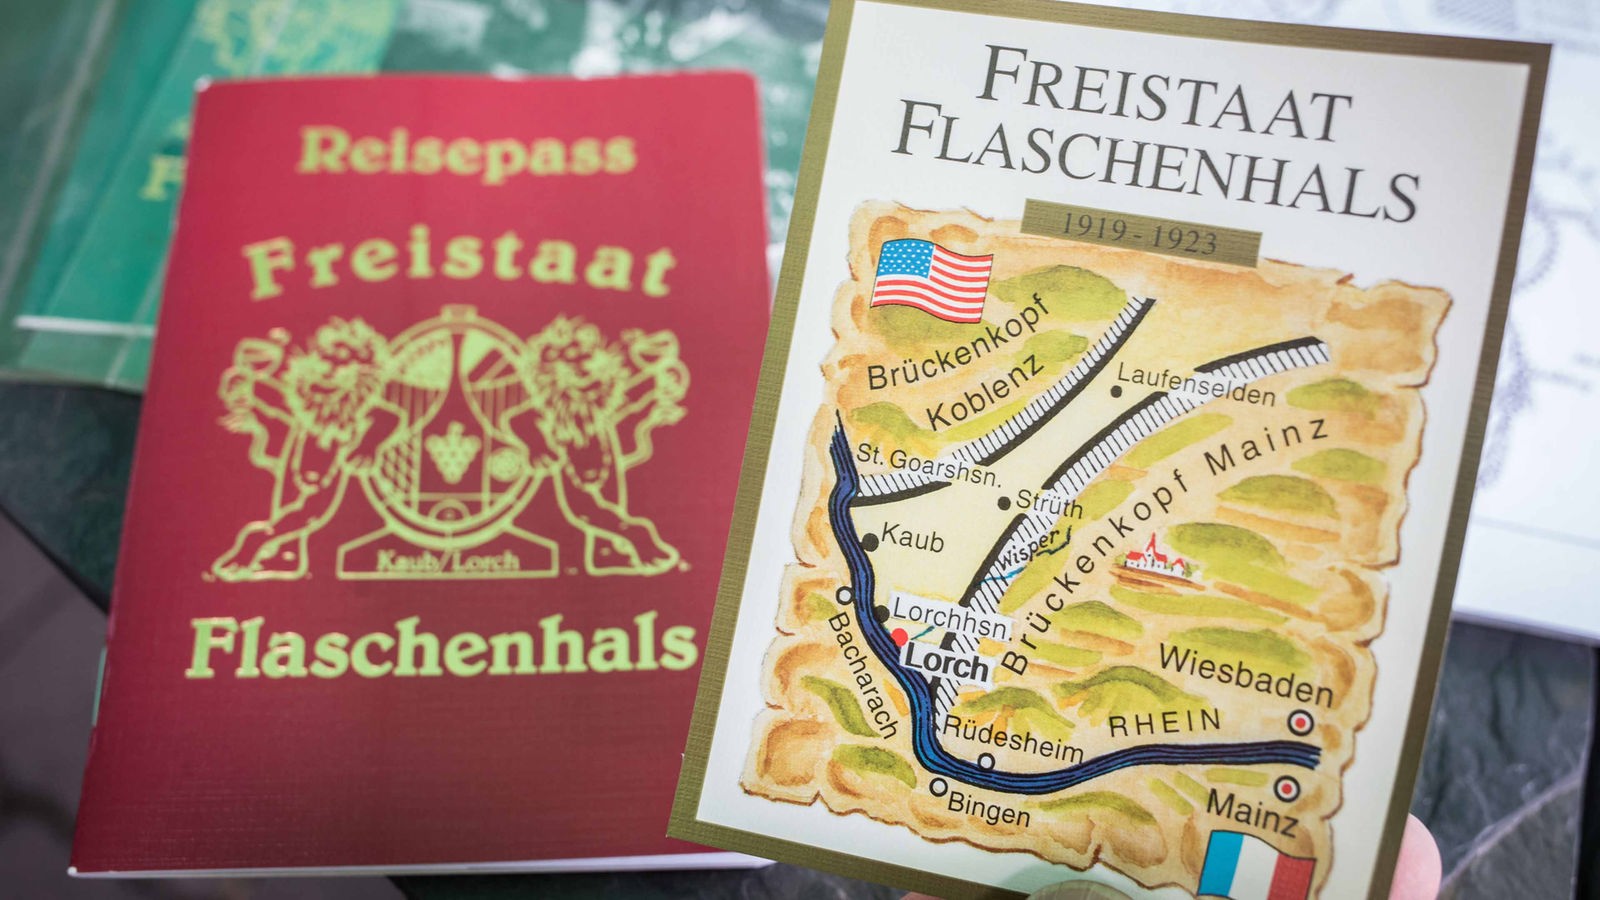 Der Freistaat Flaschenhals entsteht (am 10.01.1919) - WDR ZeitZeichen